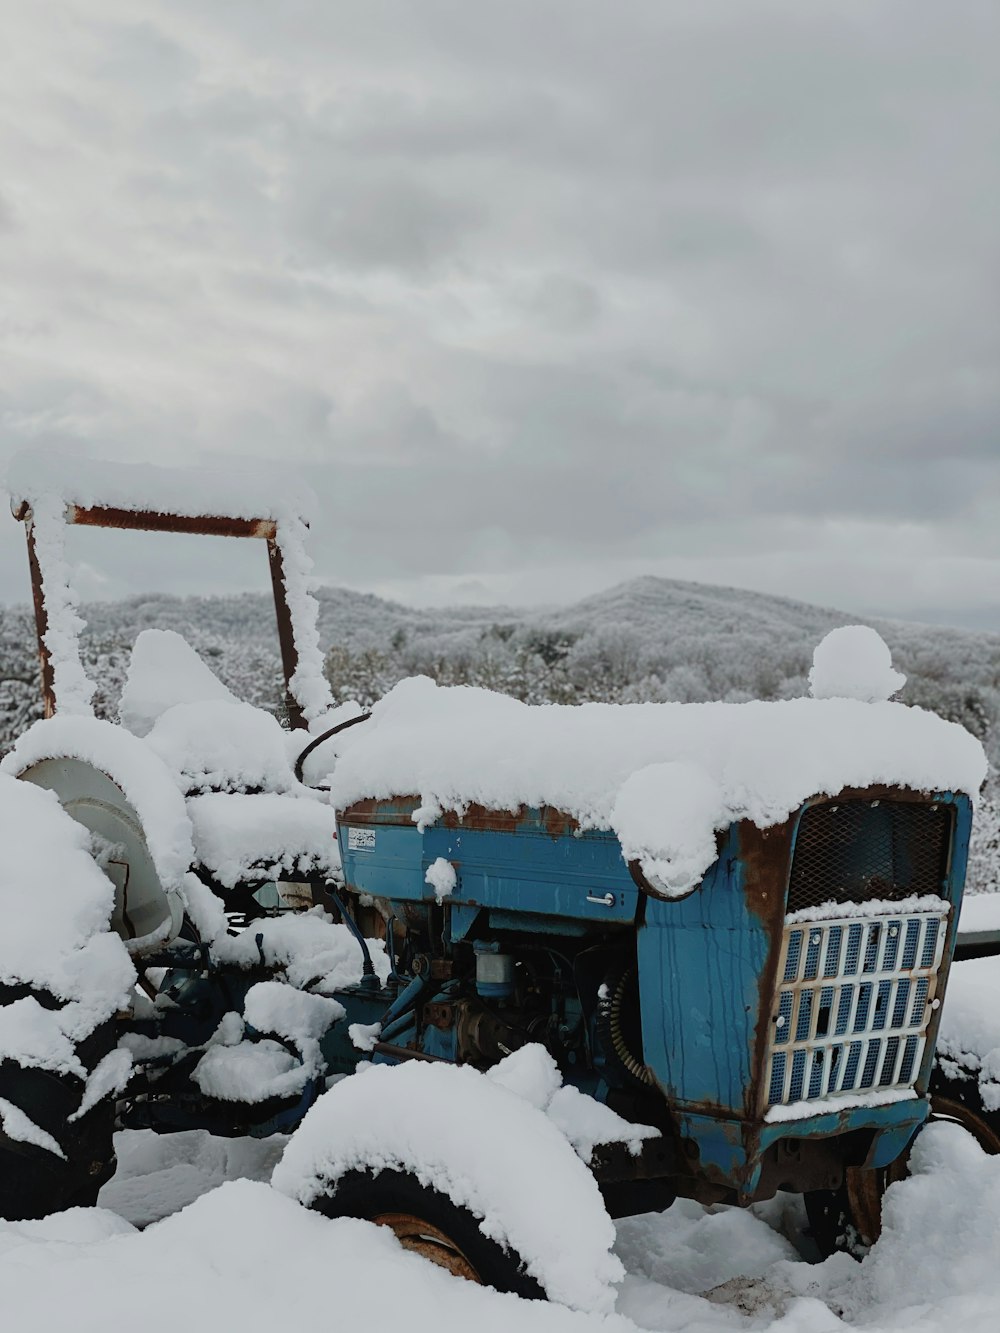 Blauer Traktor auf schneebedecktem Boden unter bewölktem Himmel